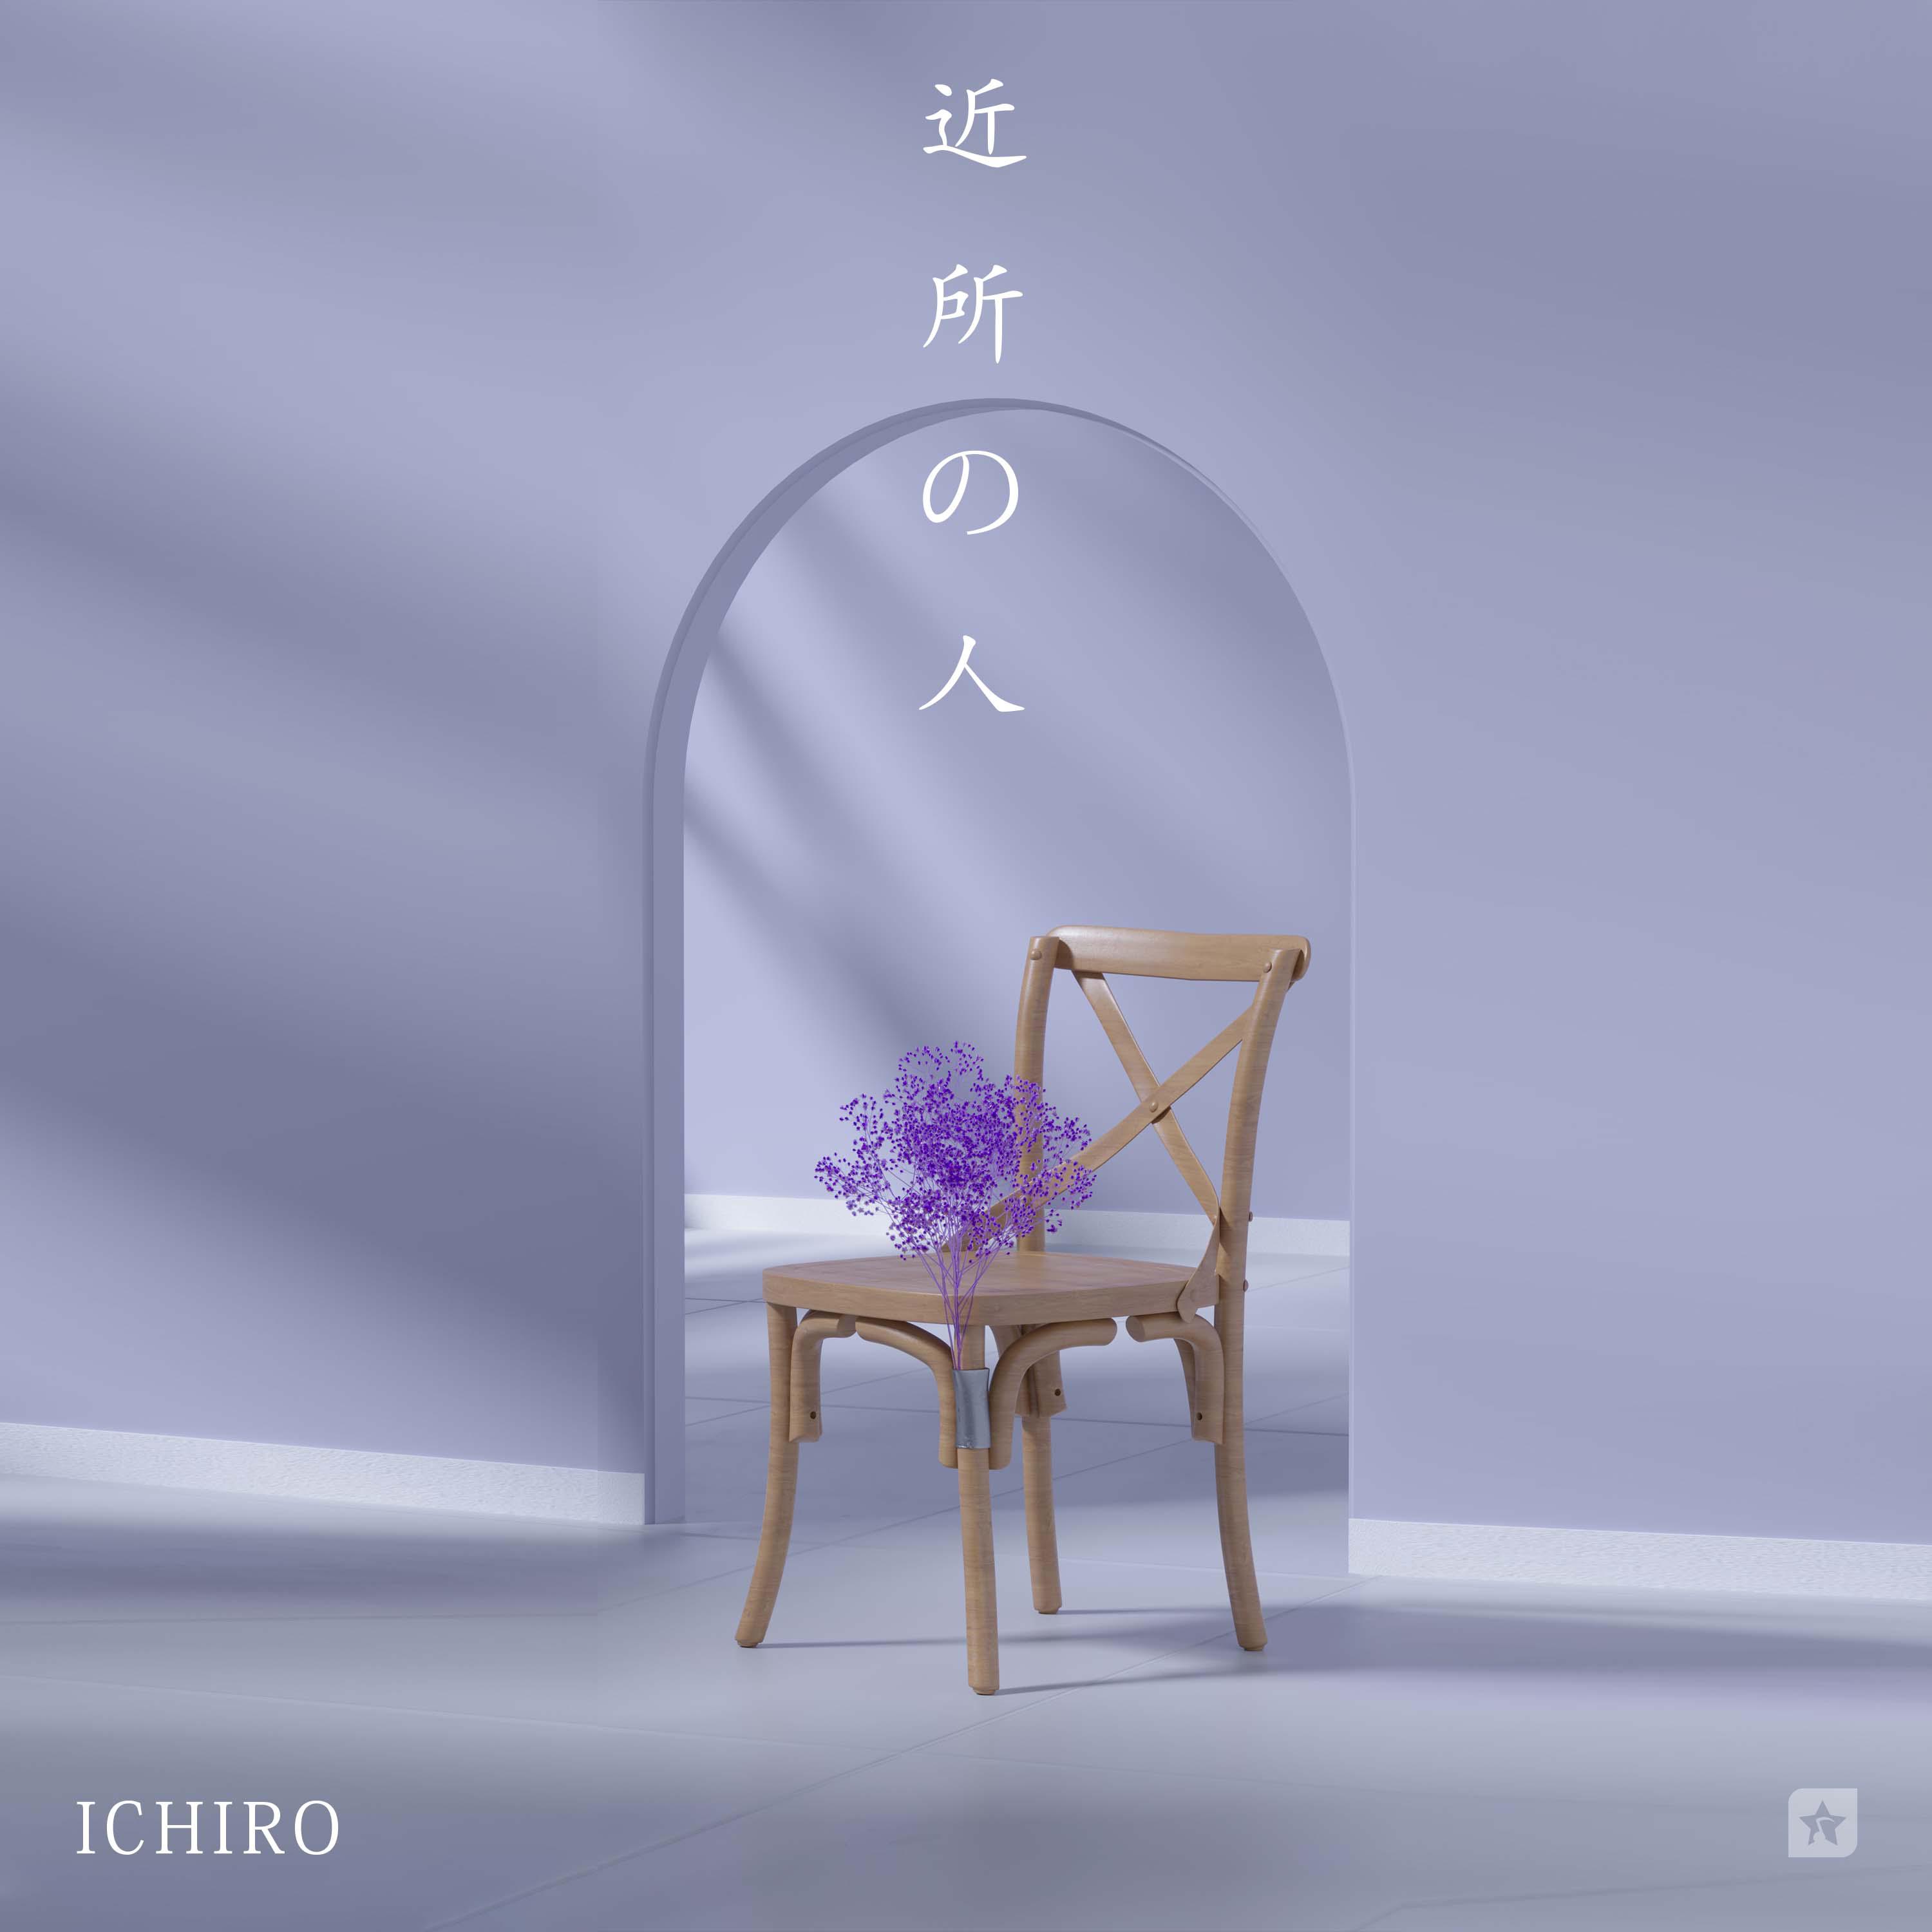 Ichiro - 近所の人